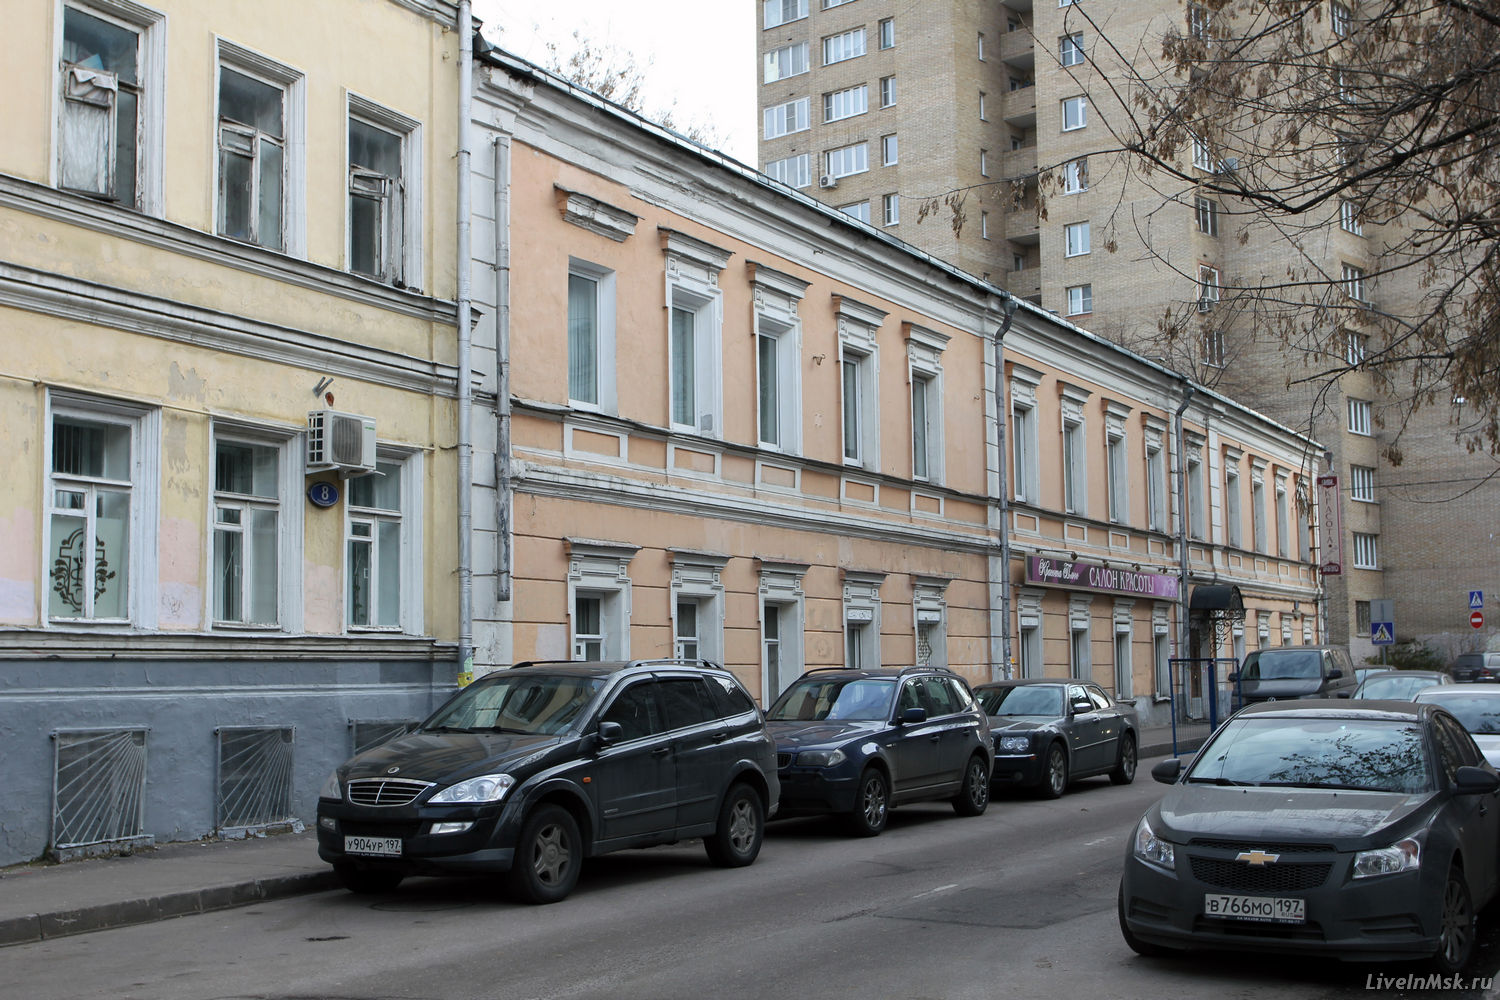 Палаты в Старопименовском переулке, фото 2014 года